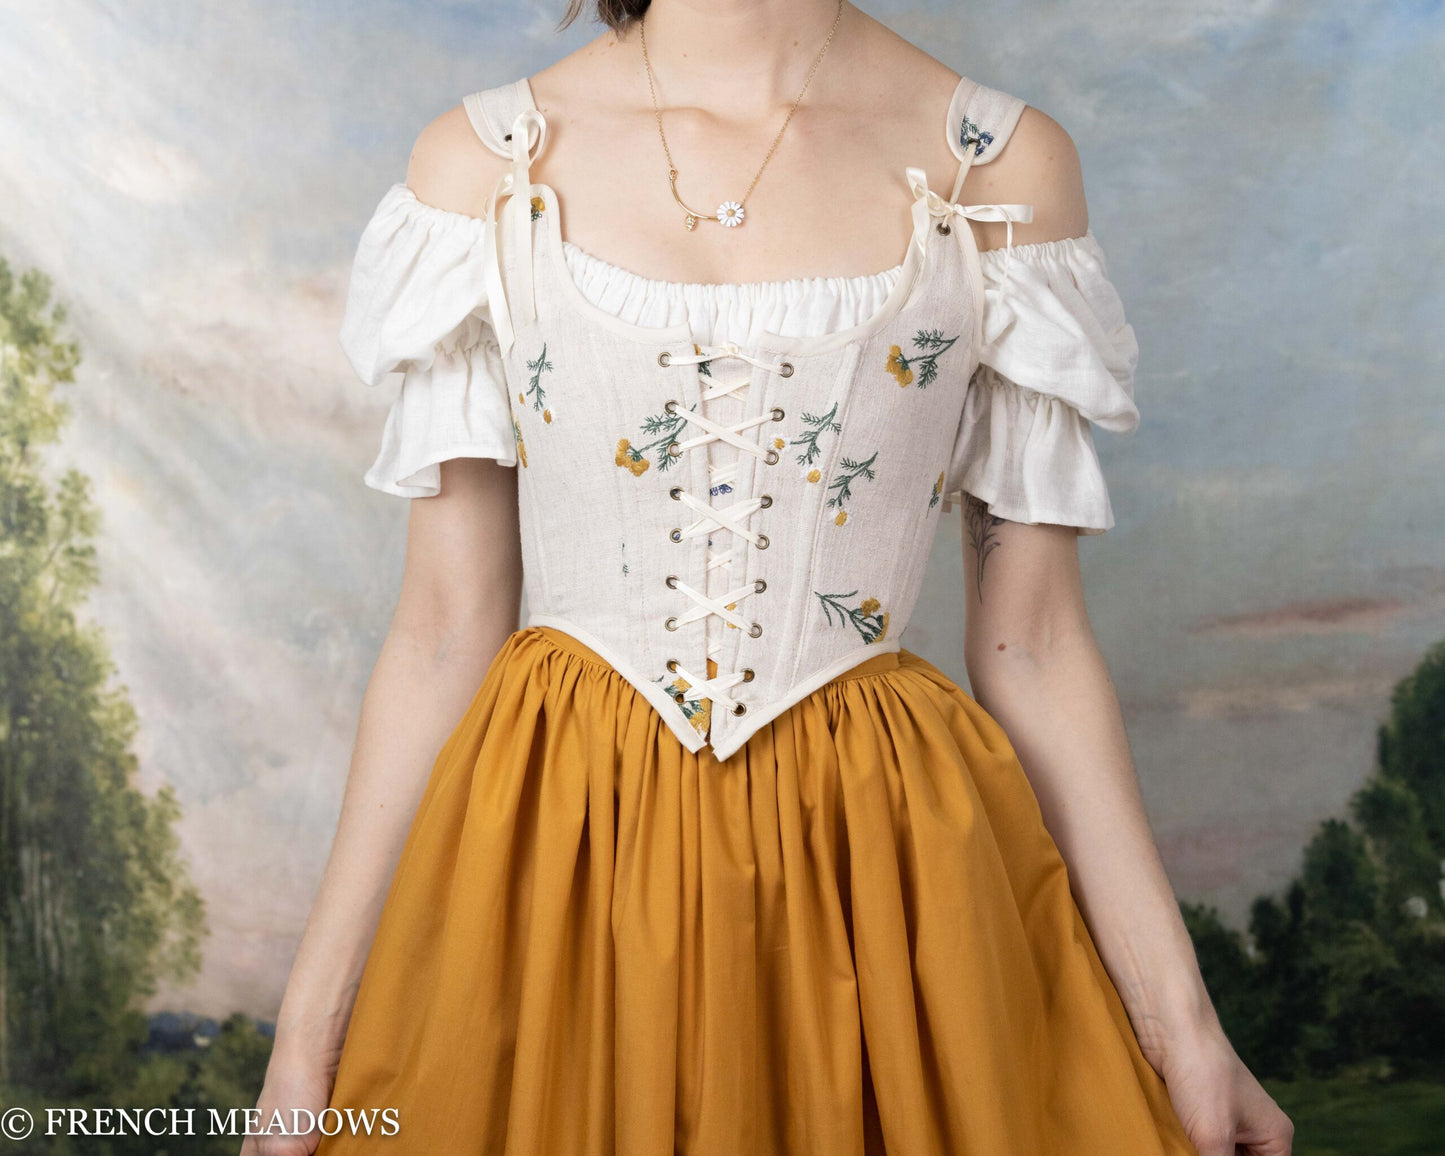 Renaissance Festival Ensemble, 3 Piece Corset Bodice, Long Skirt